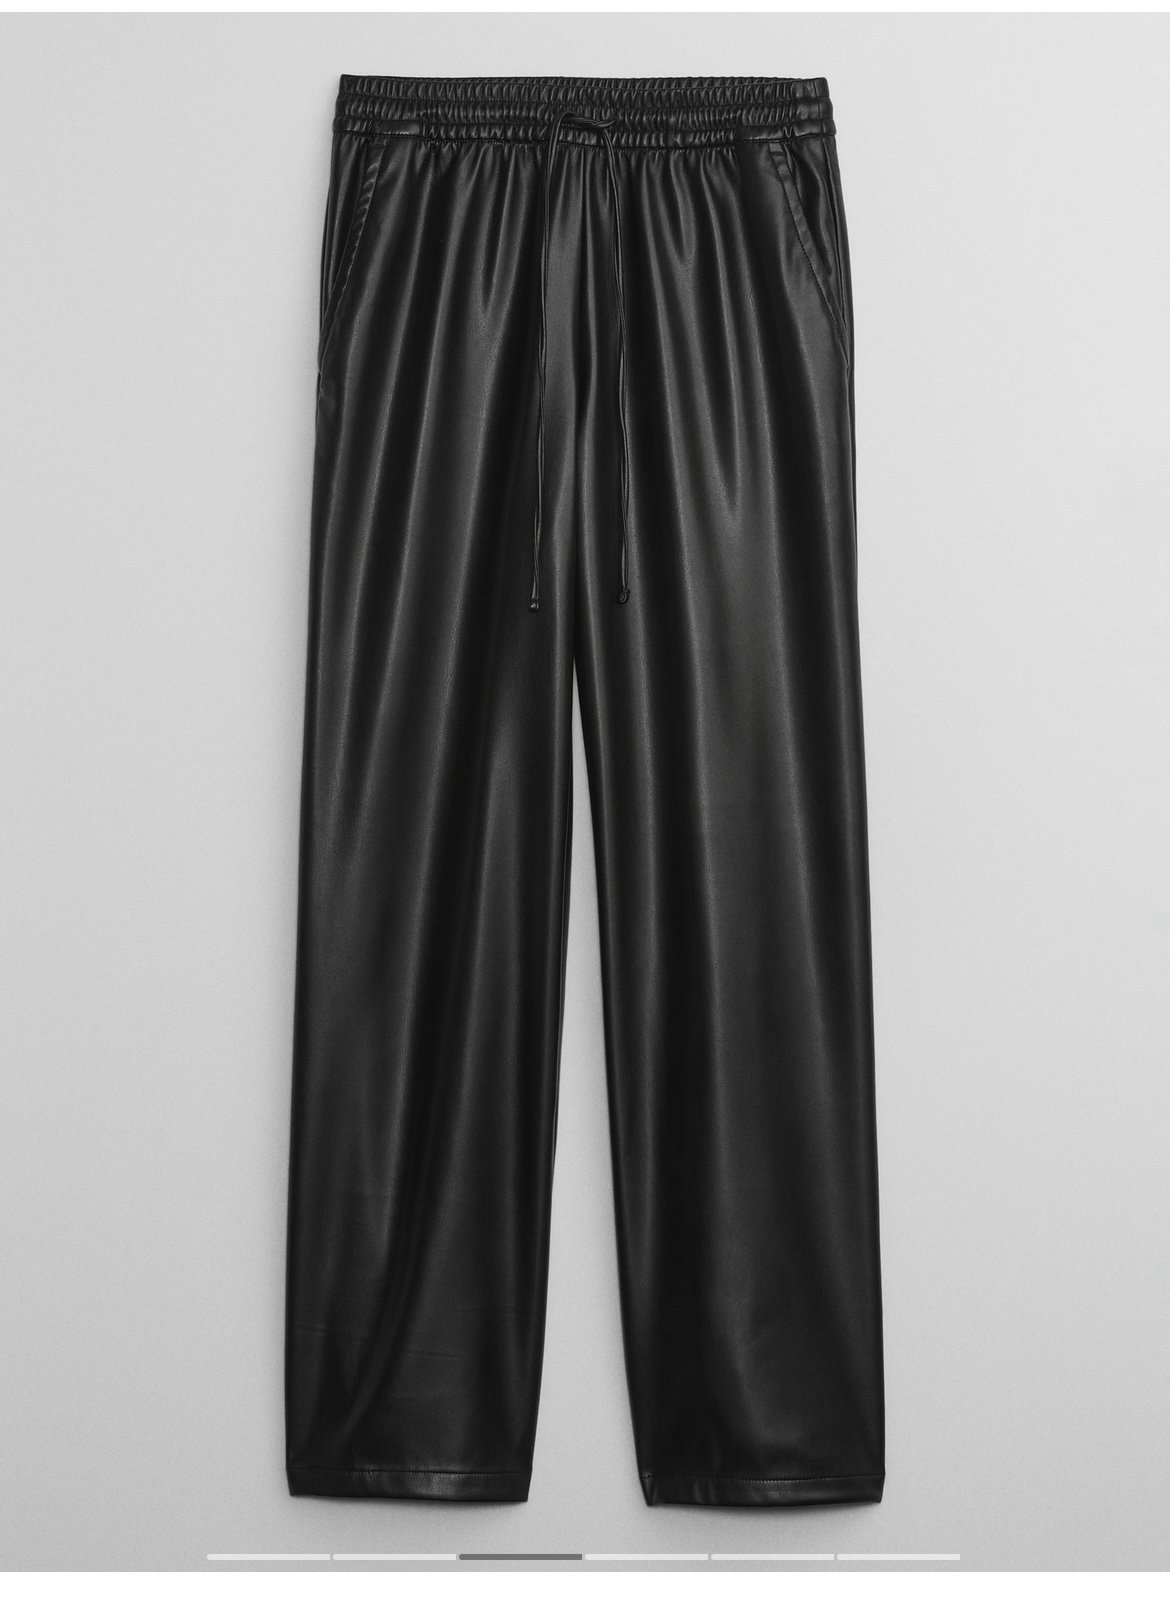 good price Faux Leather Wideleg Pants gQp1SmiPt best sale